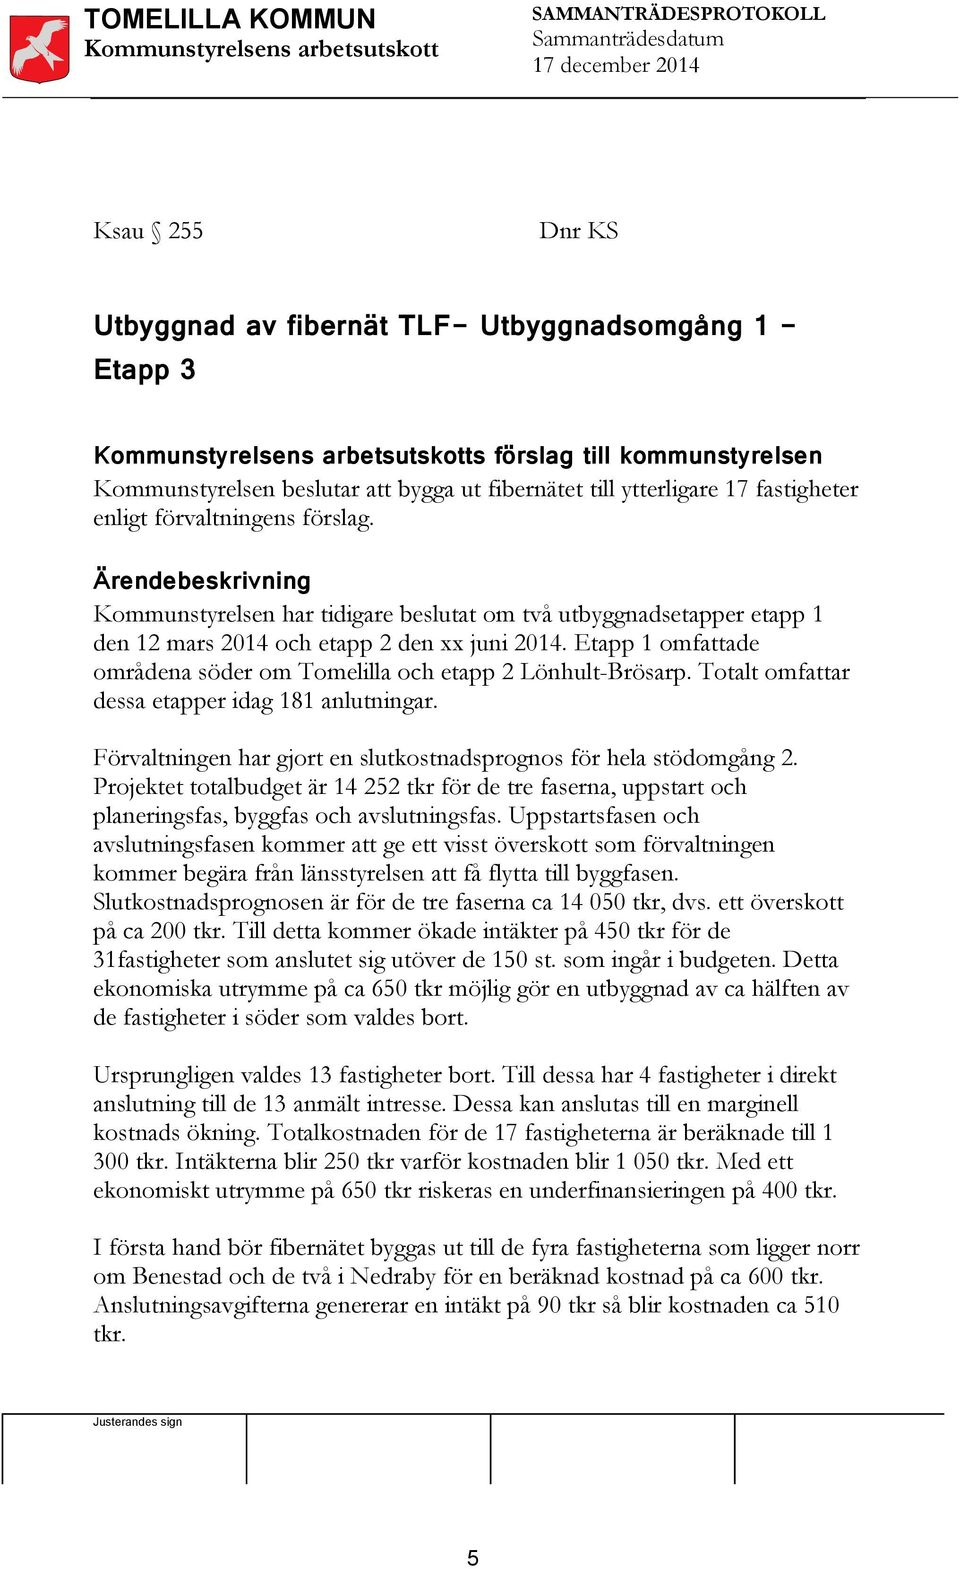 Etapp 1 omfattade områdena söder om Tomelilla och etapp 2 Lönhult-Brösarp. Totalt omfattar dessa etapper idag 181 anlutningar. Förvaltningen har gjort en slutkostnadsprognos för hela stödomgång 2.